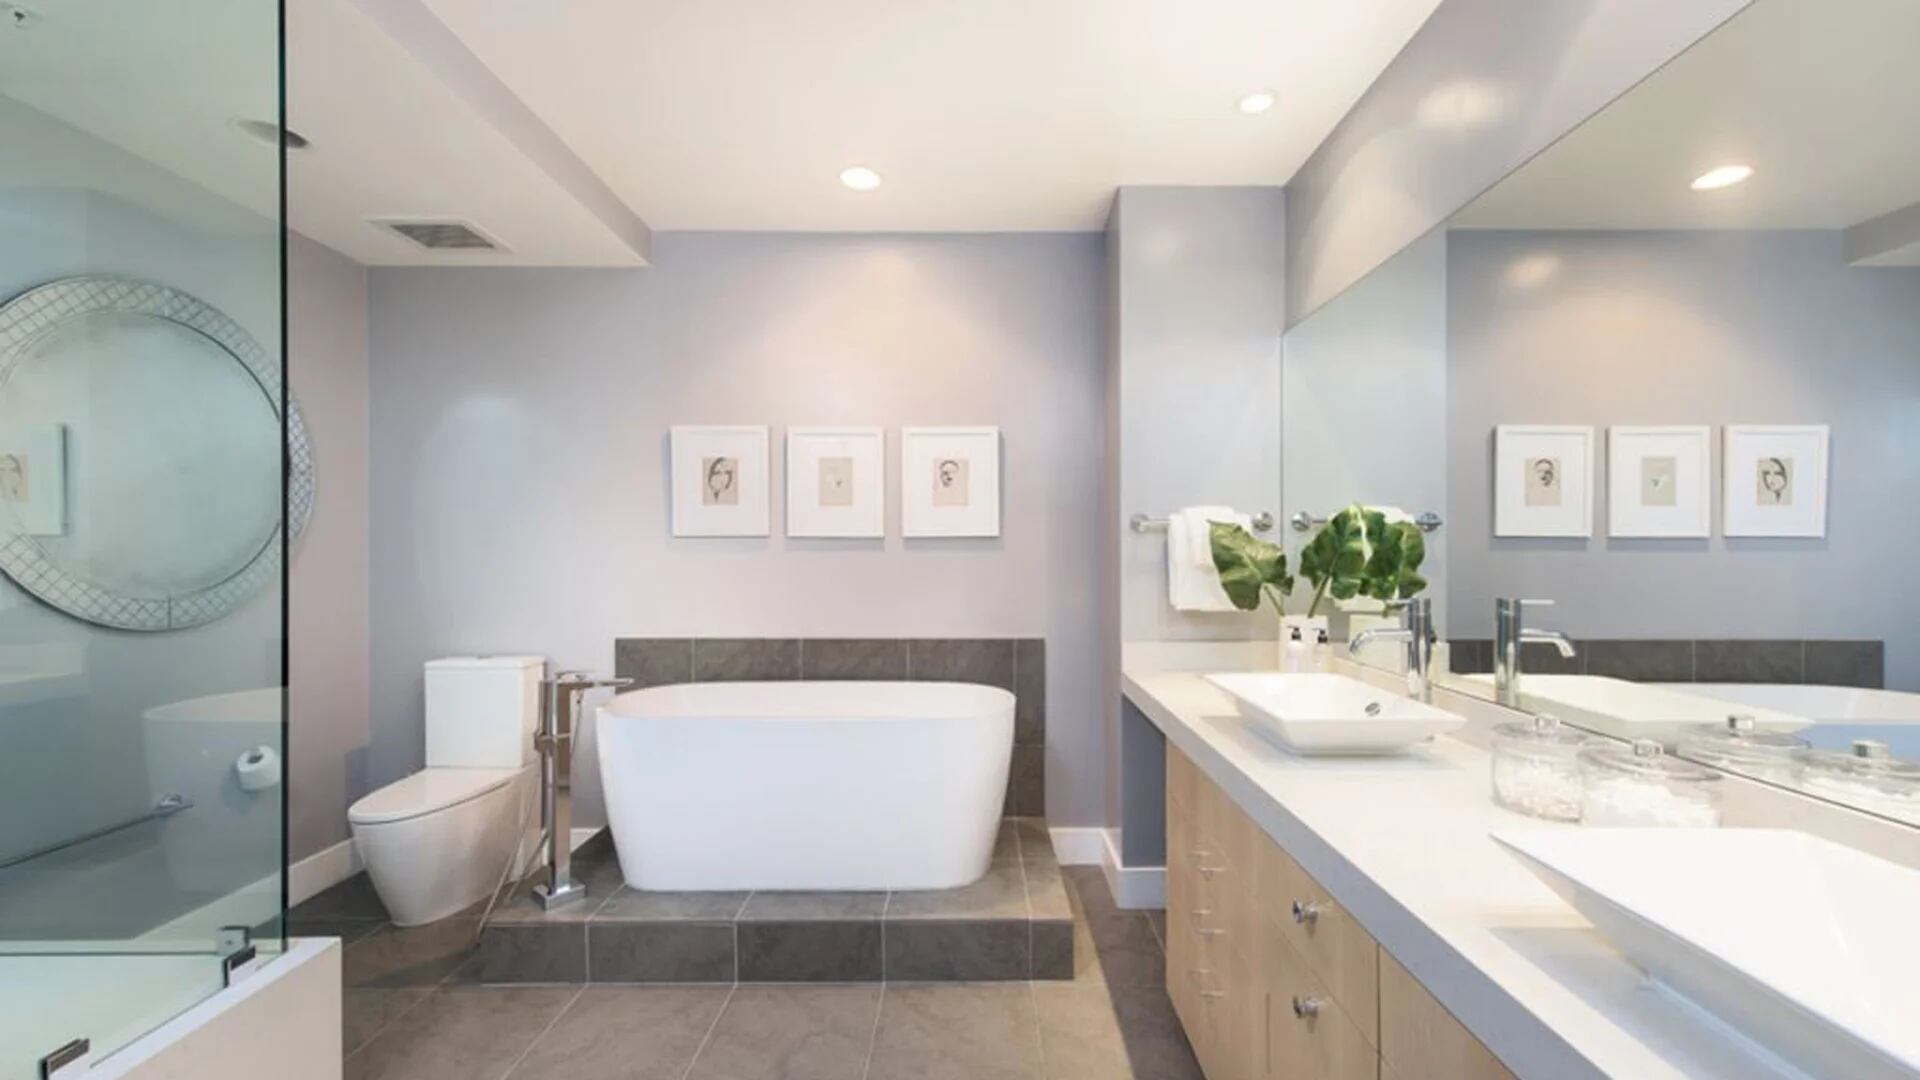 La vivienda cuenta con tres baños, cuya sobria decoración les permite lucir ambientes modernos y elegantes (Zillow)